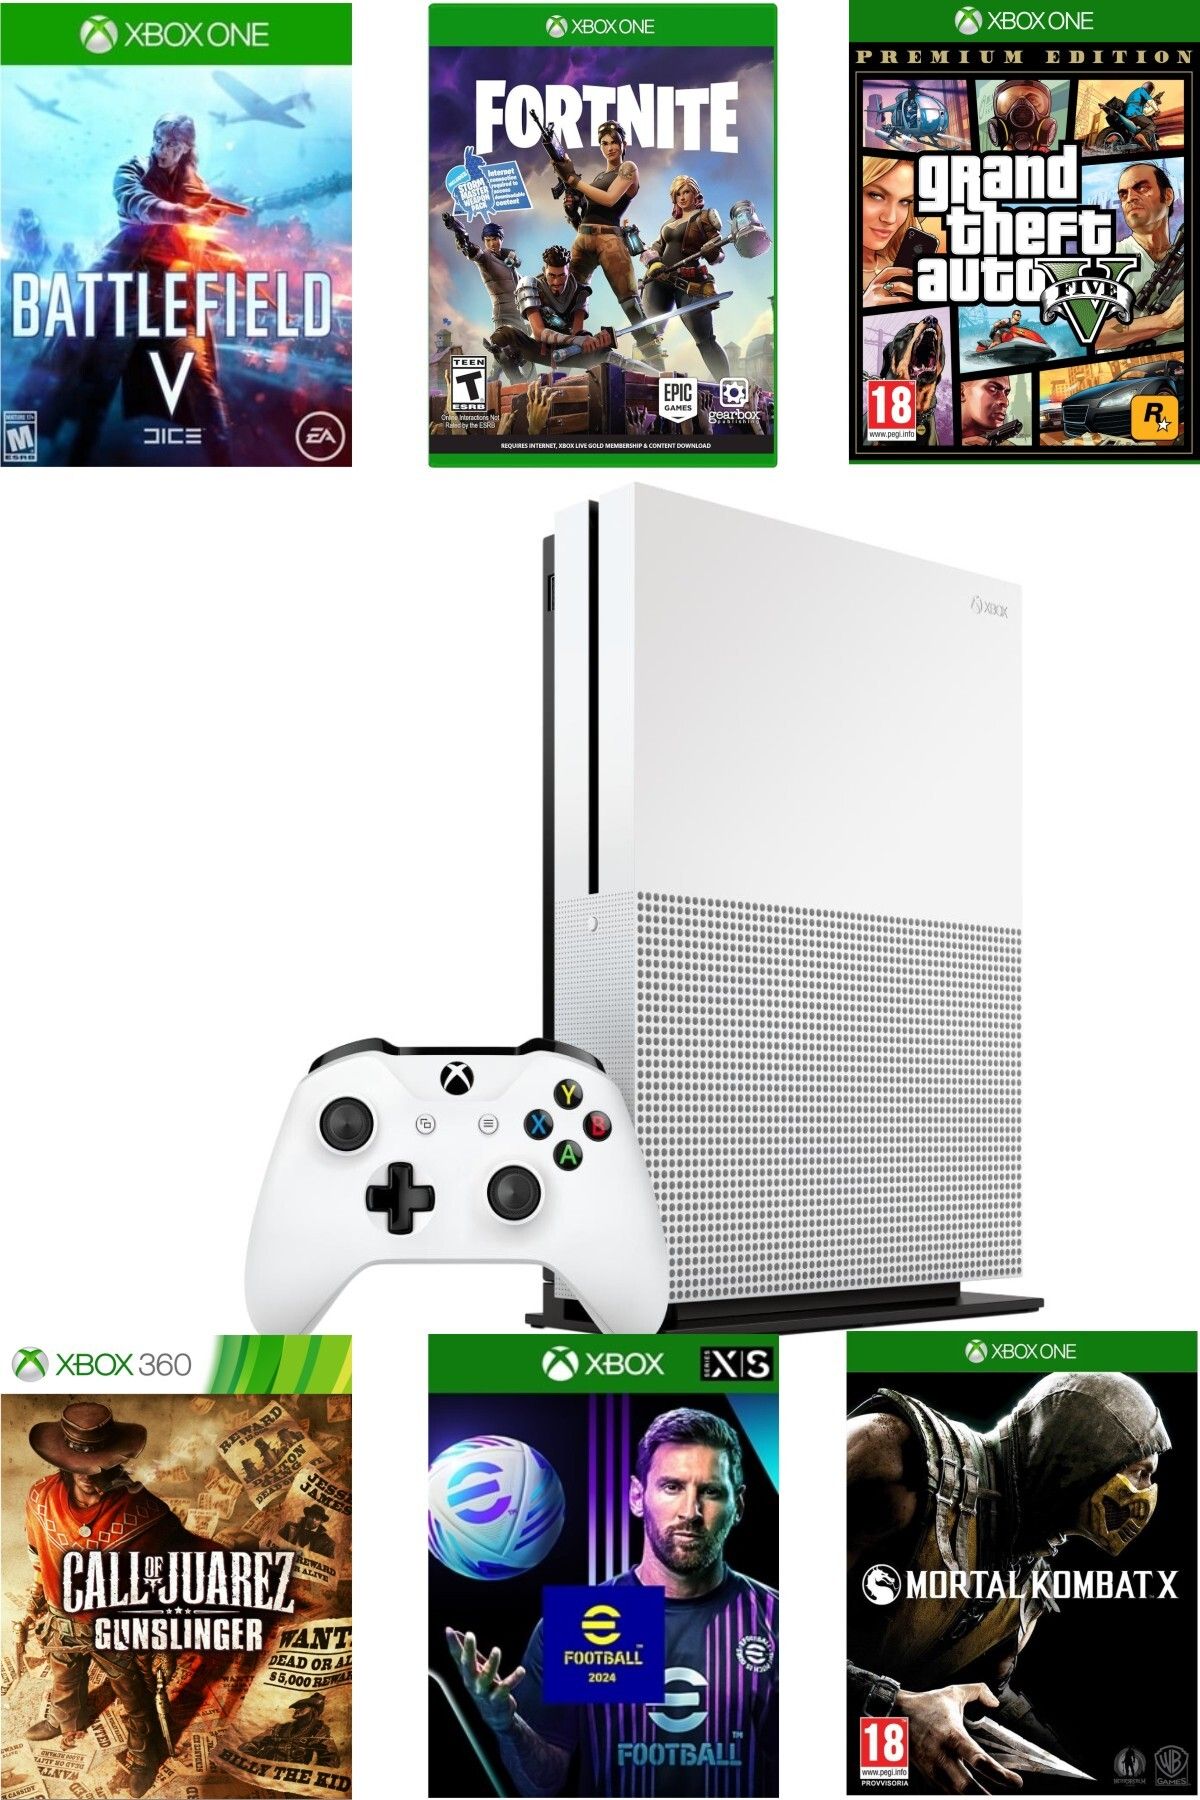 Microsoft XBOX One S 500 Gb - Teşhir Cihazı 6 Ay Garantili - GTA 5 Dahil 10 Dijital Oyun Hediyeli.